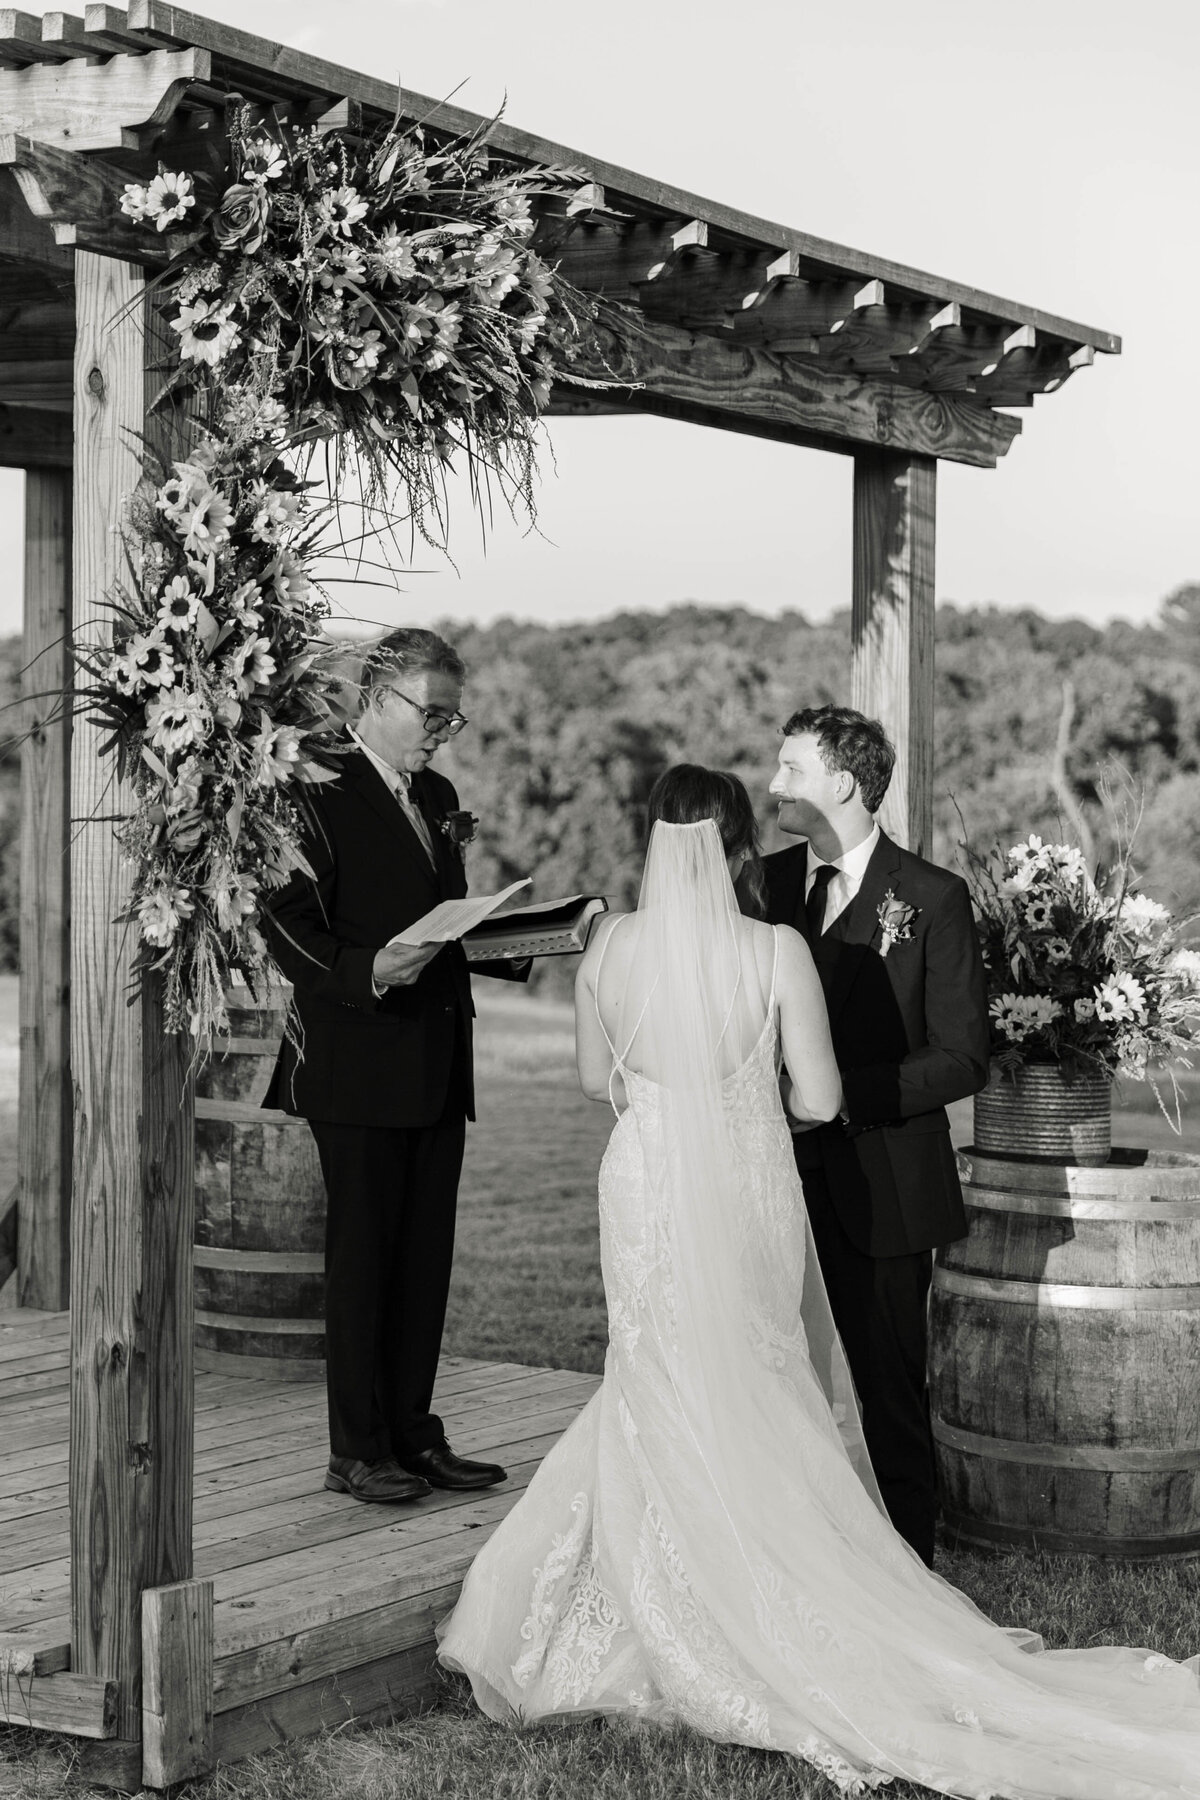 Texas wedding at Savannah's Events by Alex Blair